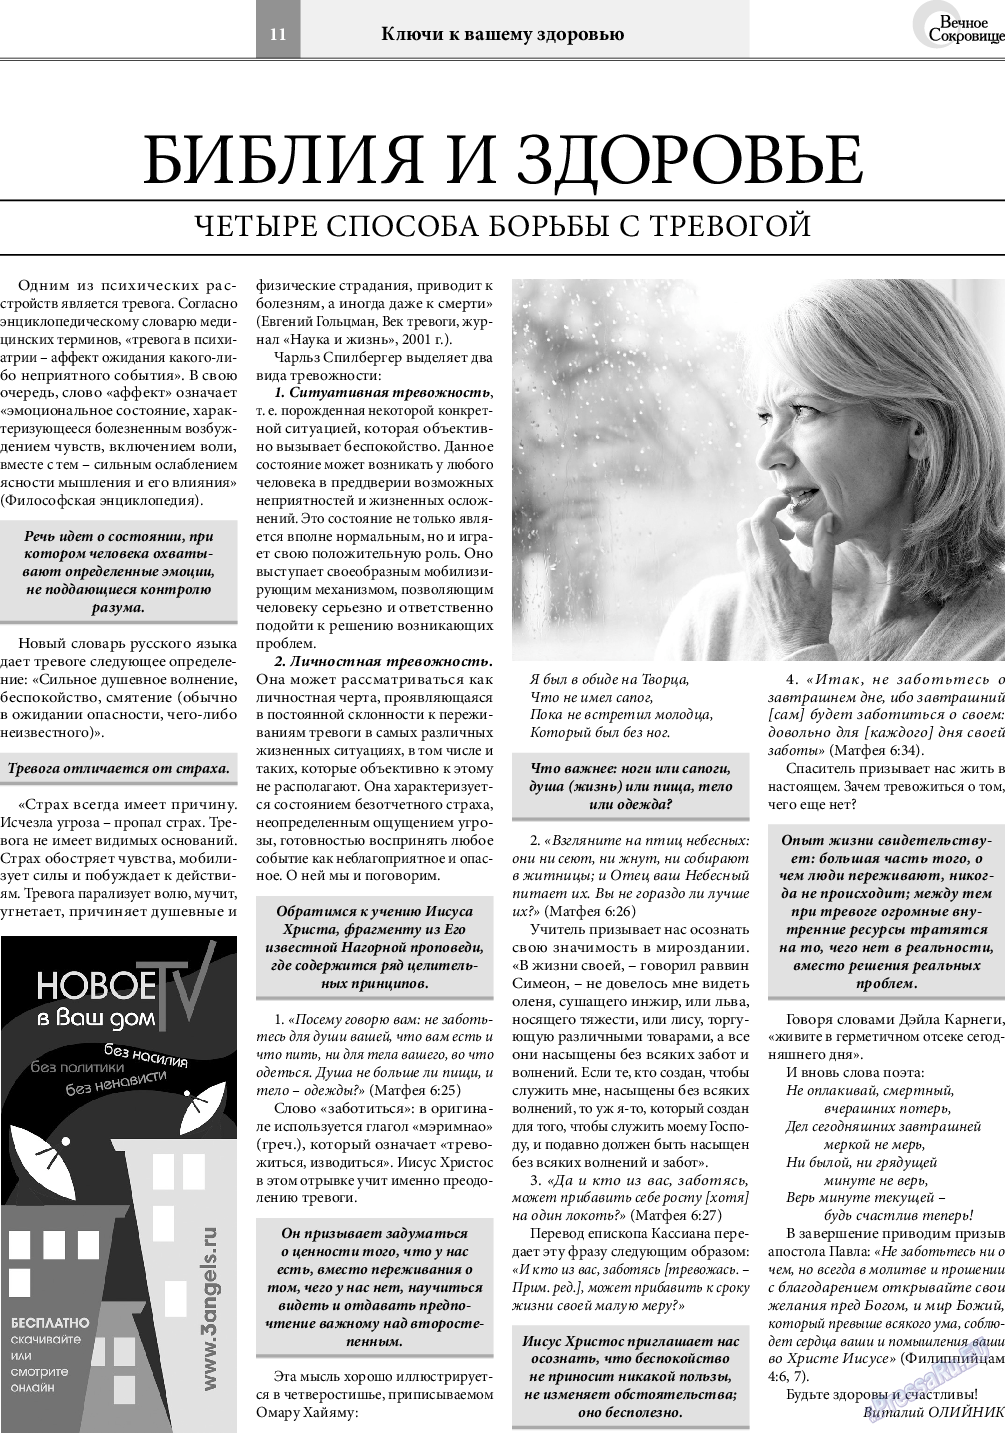 Вечное сокровище, газета. 2019 №3 стр.11